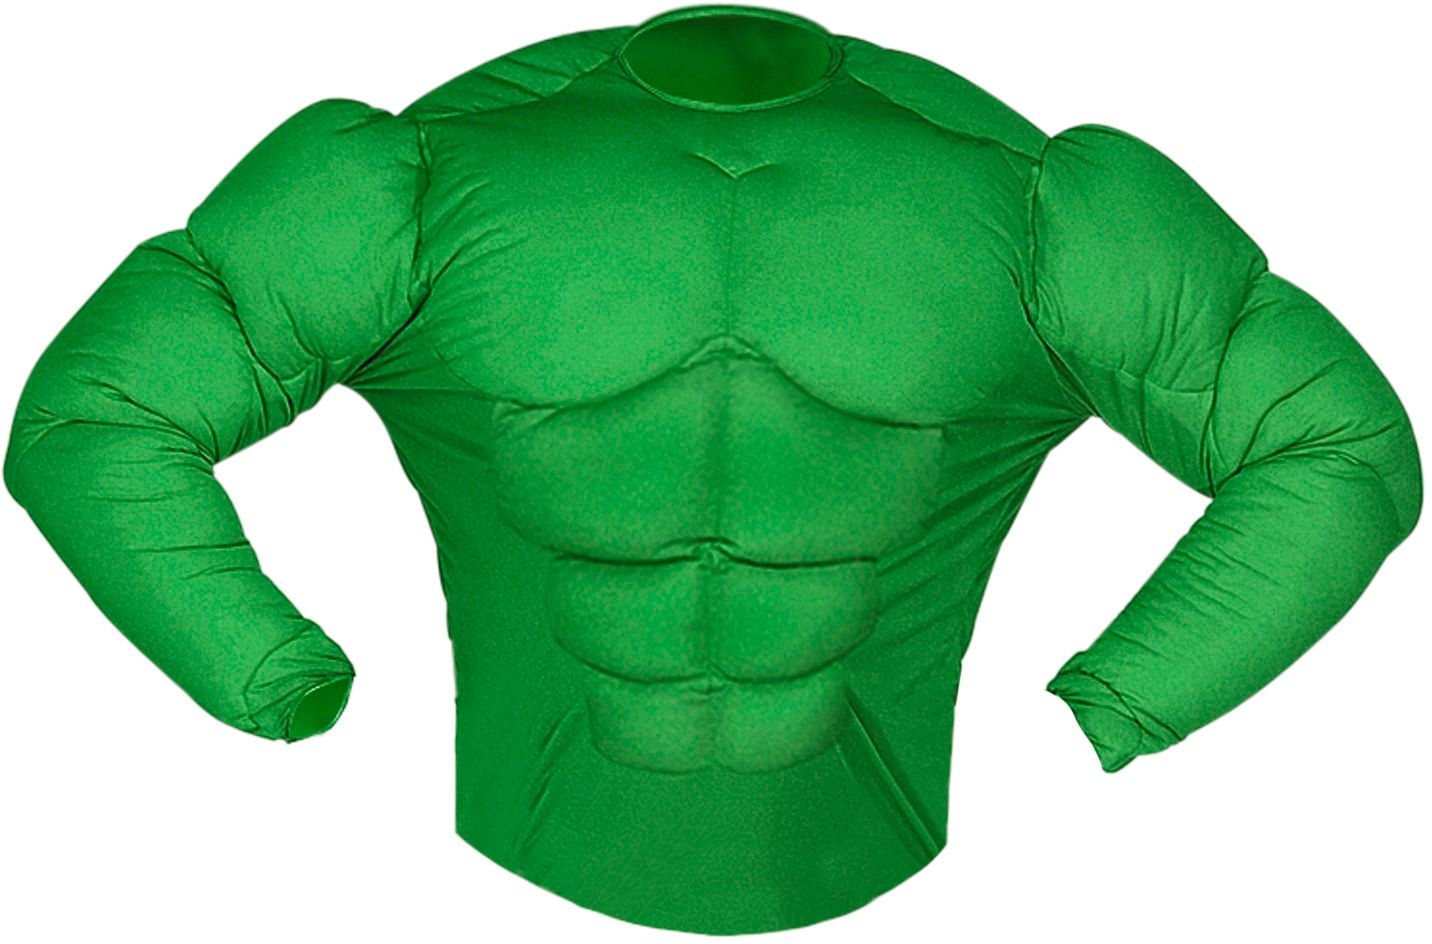 Hulk spierenshirt